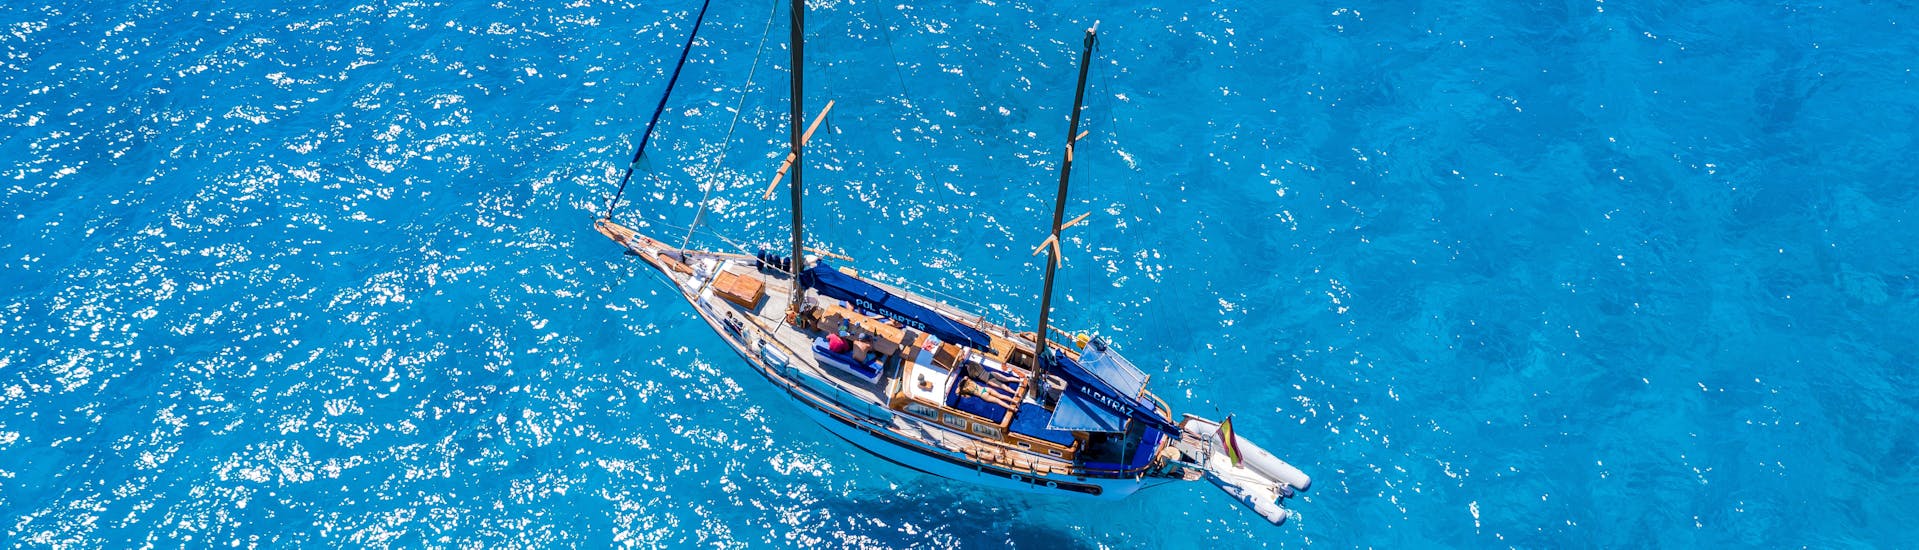 Excursion en bateau de Pol Charters Mallorca dans la baie de Palma avec apéritif et snorkeling.